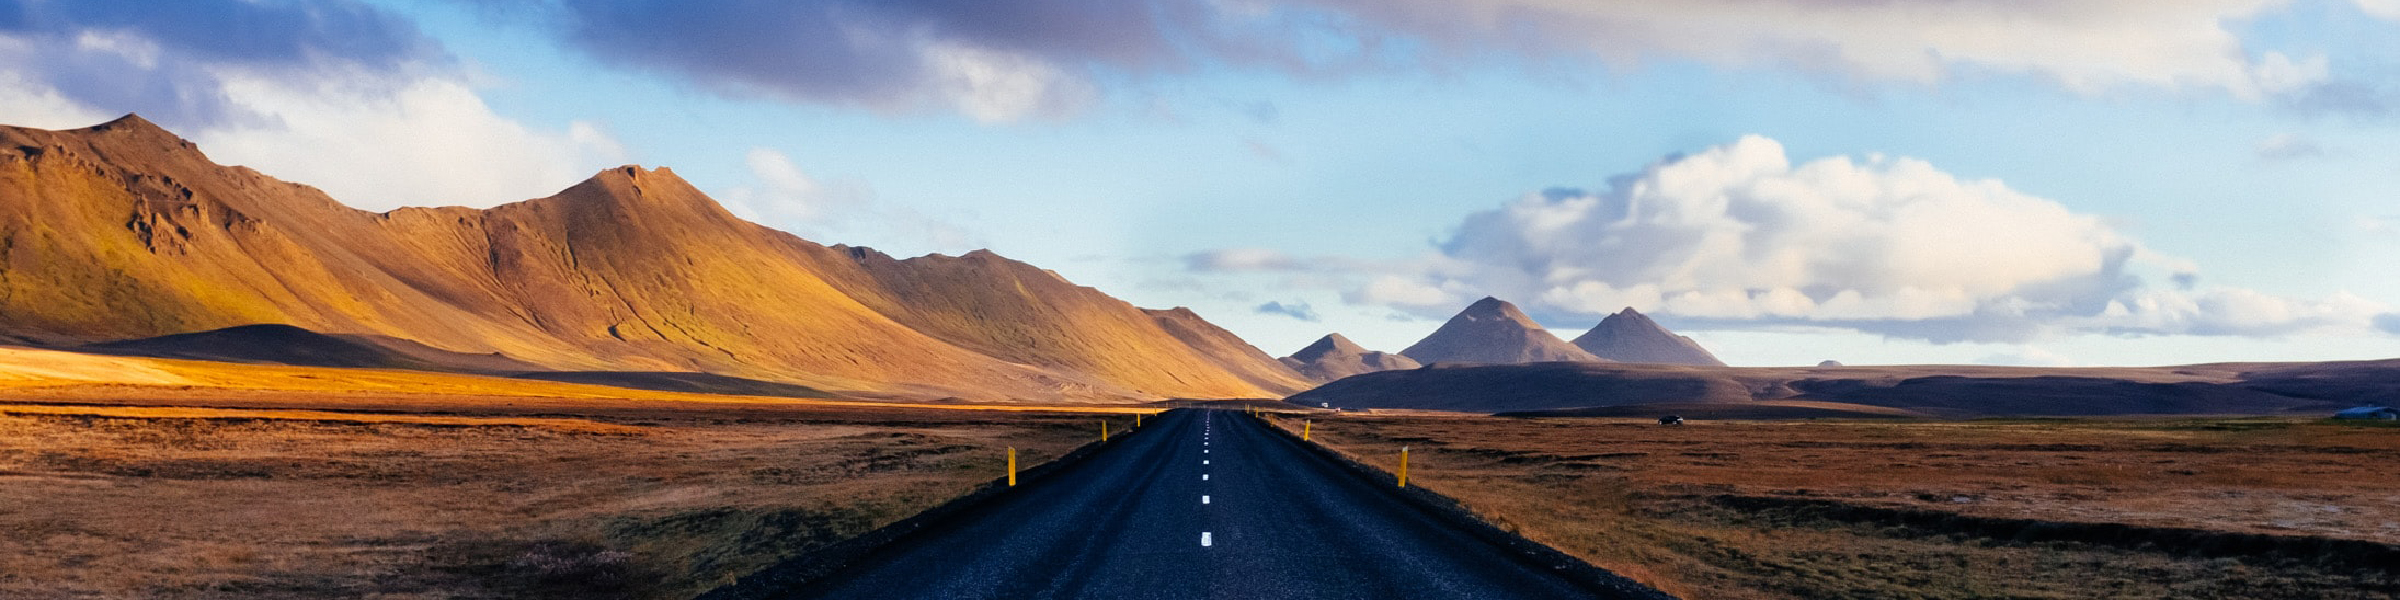 An open road crossing a desert. 